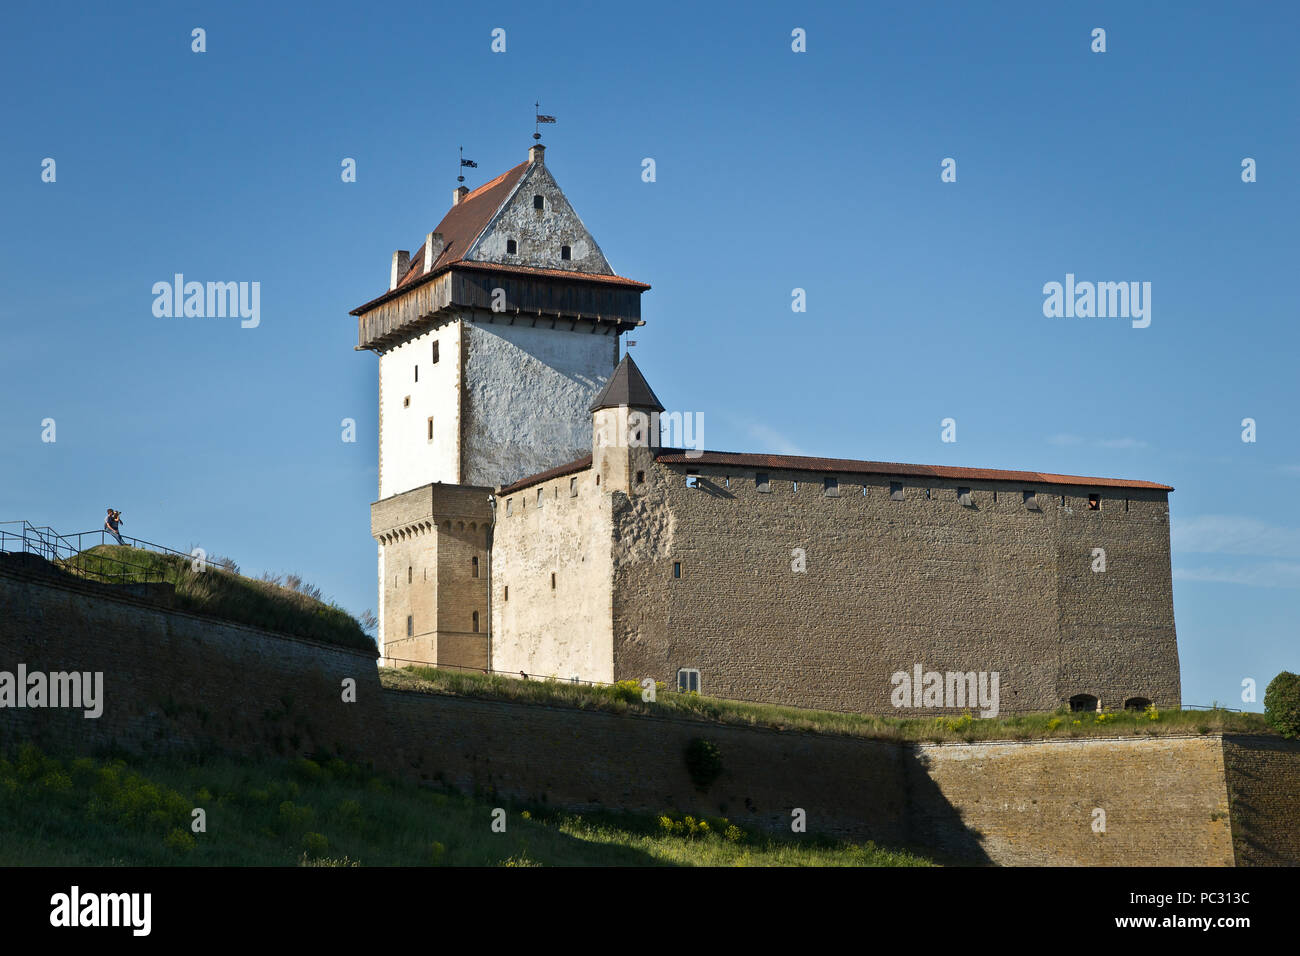 Château médiéval de Narva, frontière estonienne avec la Russie Banque D'Images